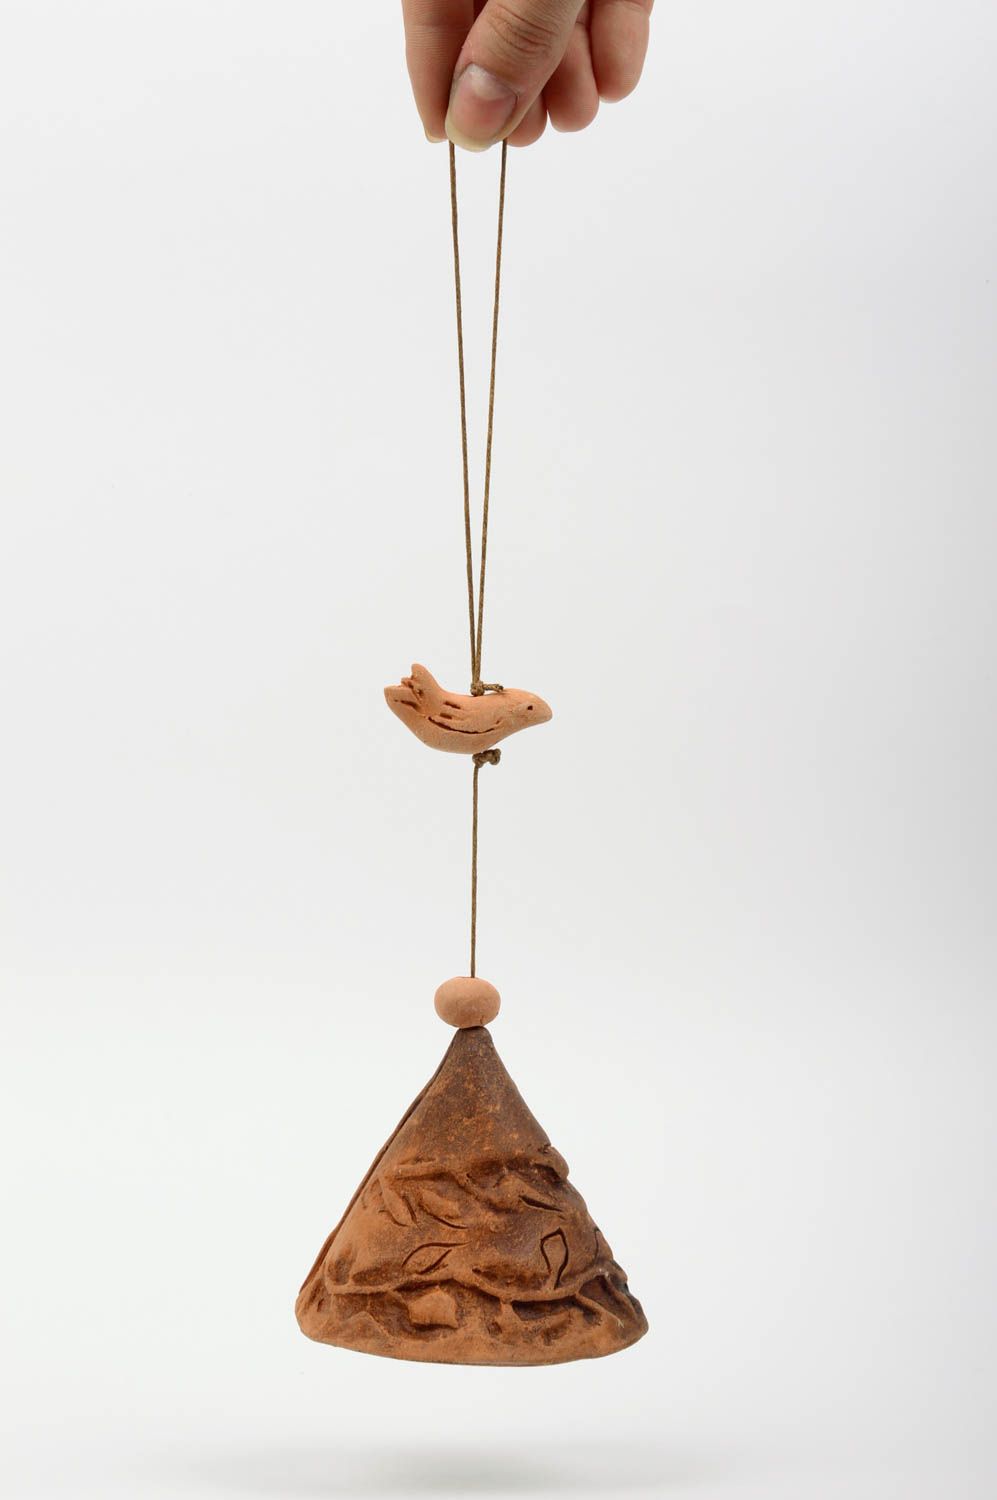 Декоративный керамический колокольчик из глины в технике молочения ручной работы фото 1